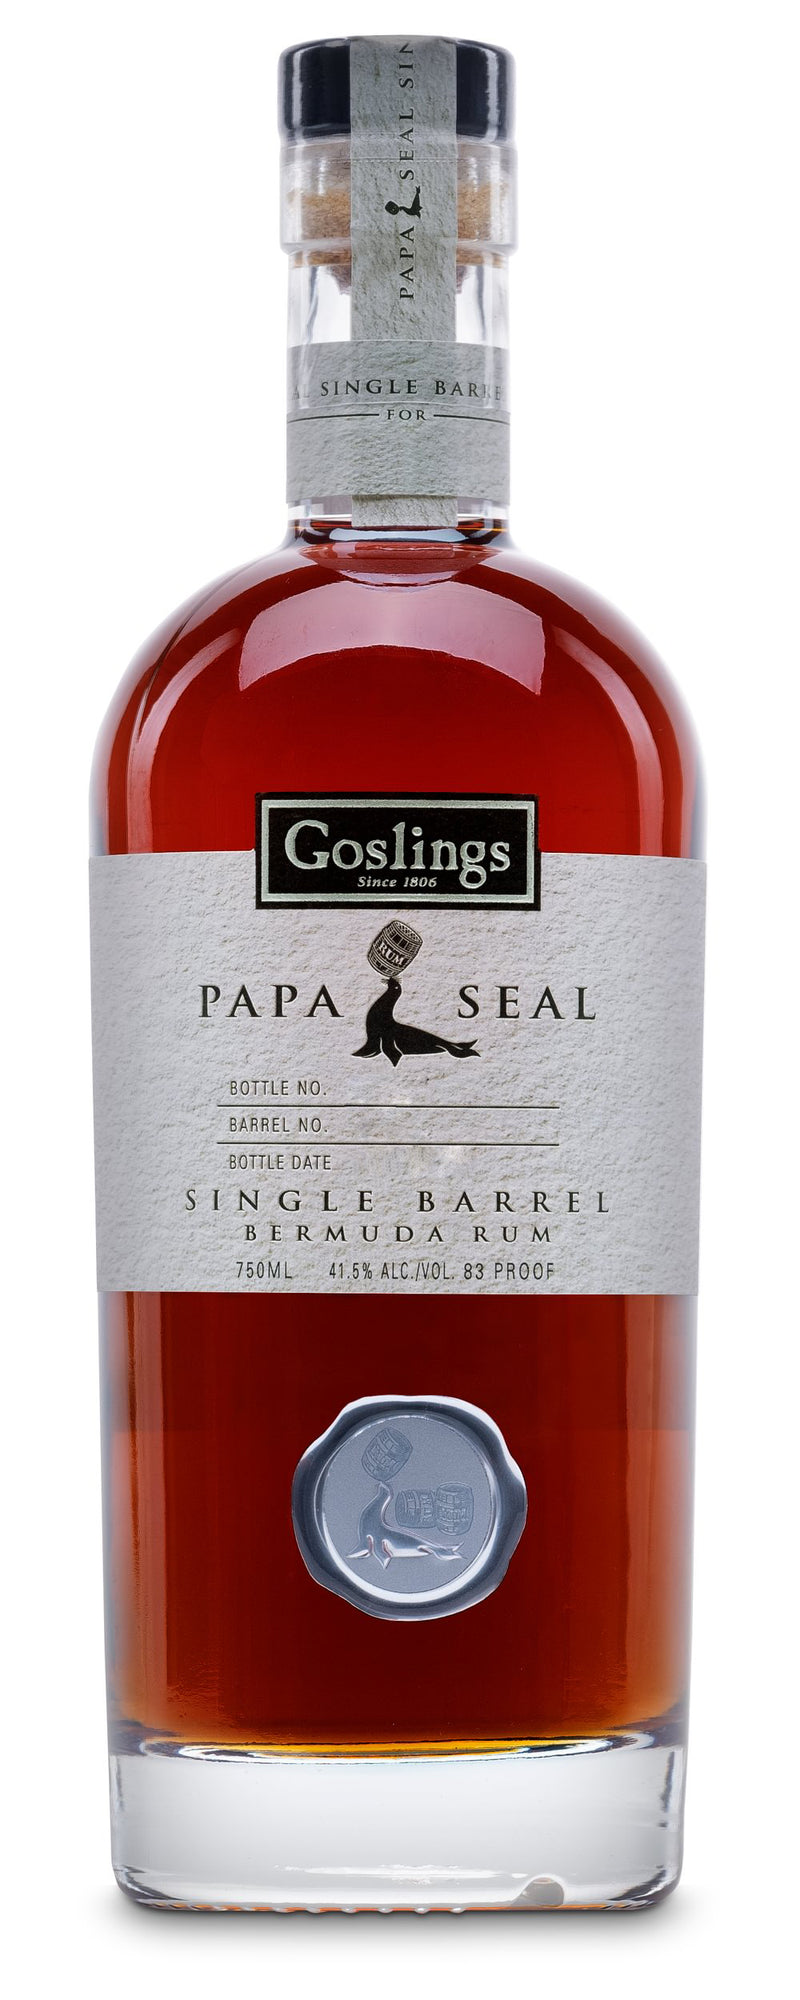 Goslings Papa Seal Single Barrel Bermuda Rum